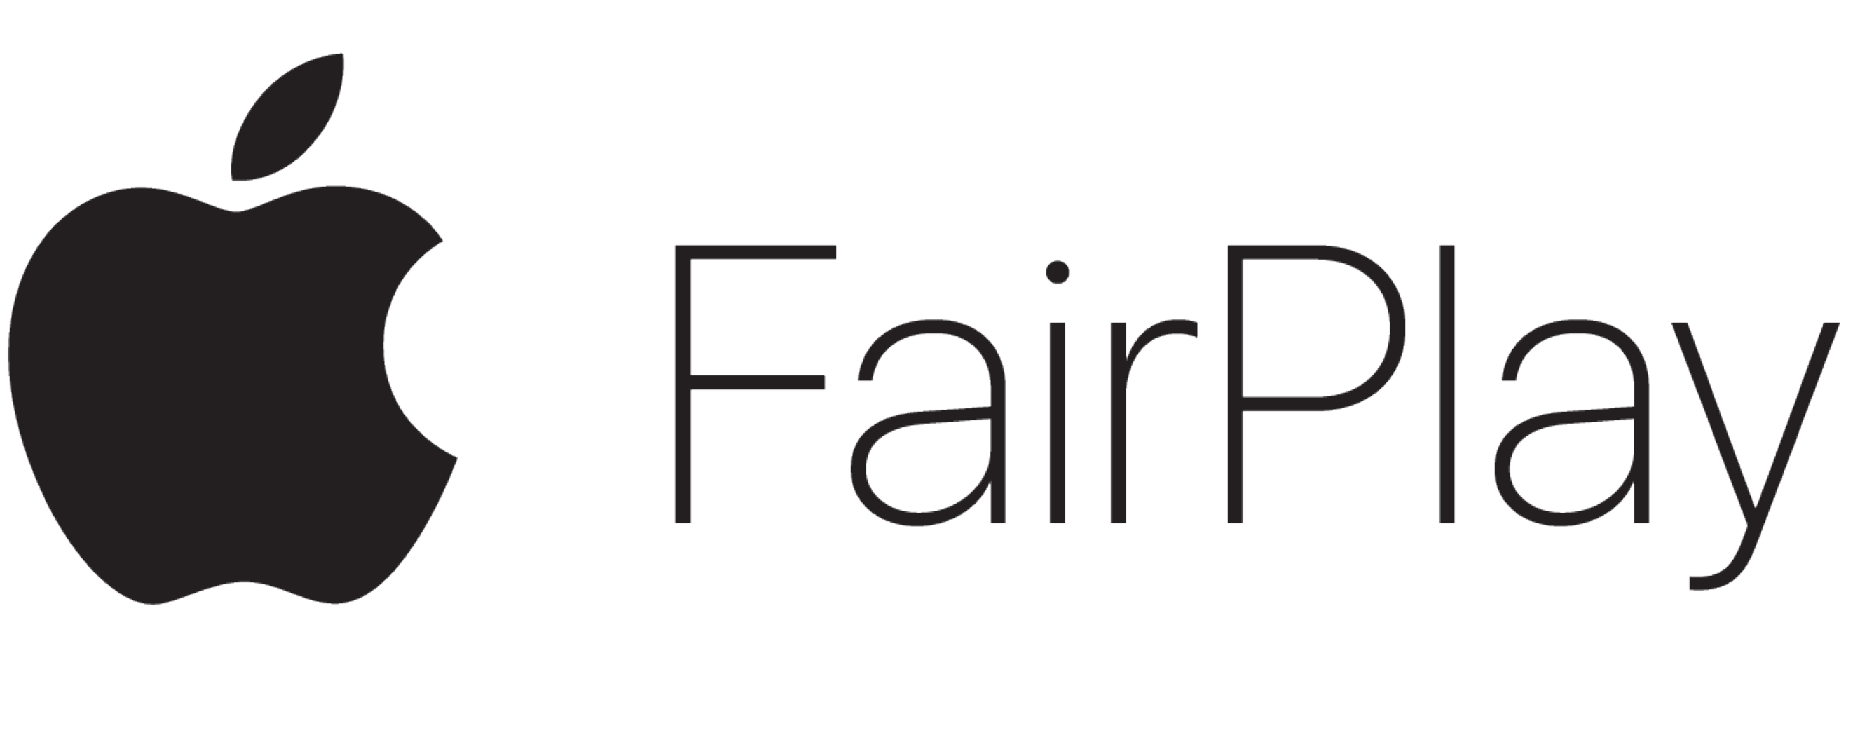 apple-fairplay logo